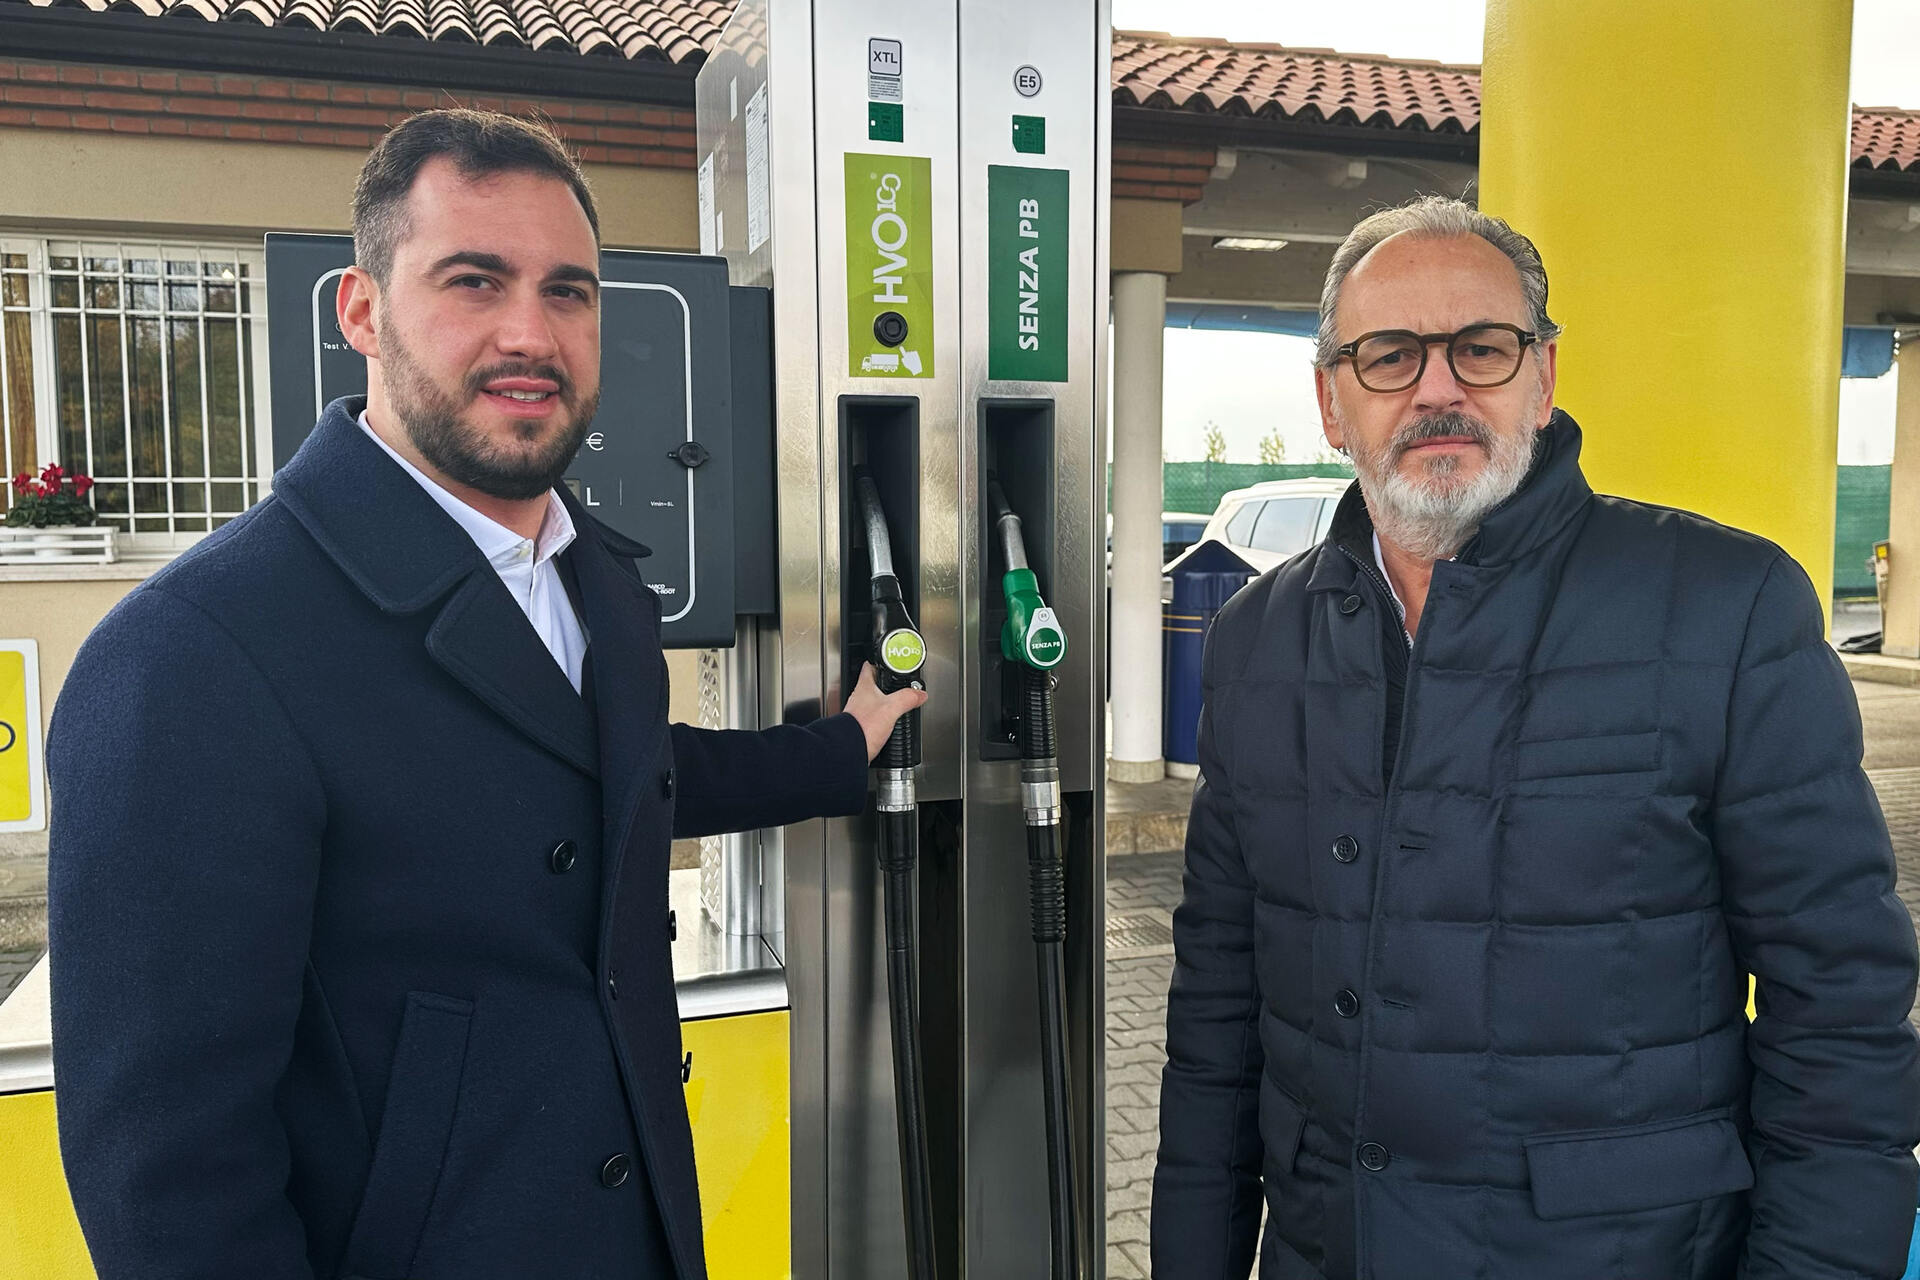 Biodiesel: Nicola Cavatton og Luca Cavatton er henholdsvis administrerende direktør og sjef for HVO100 i Costantin Spa